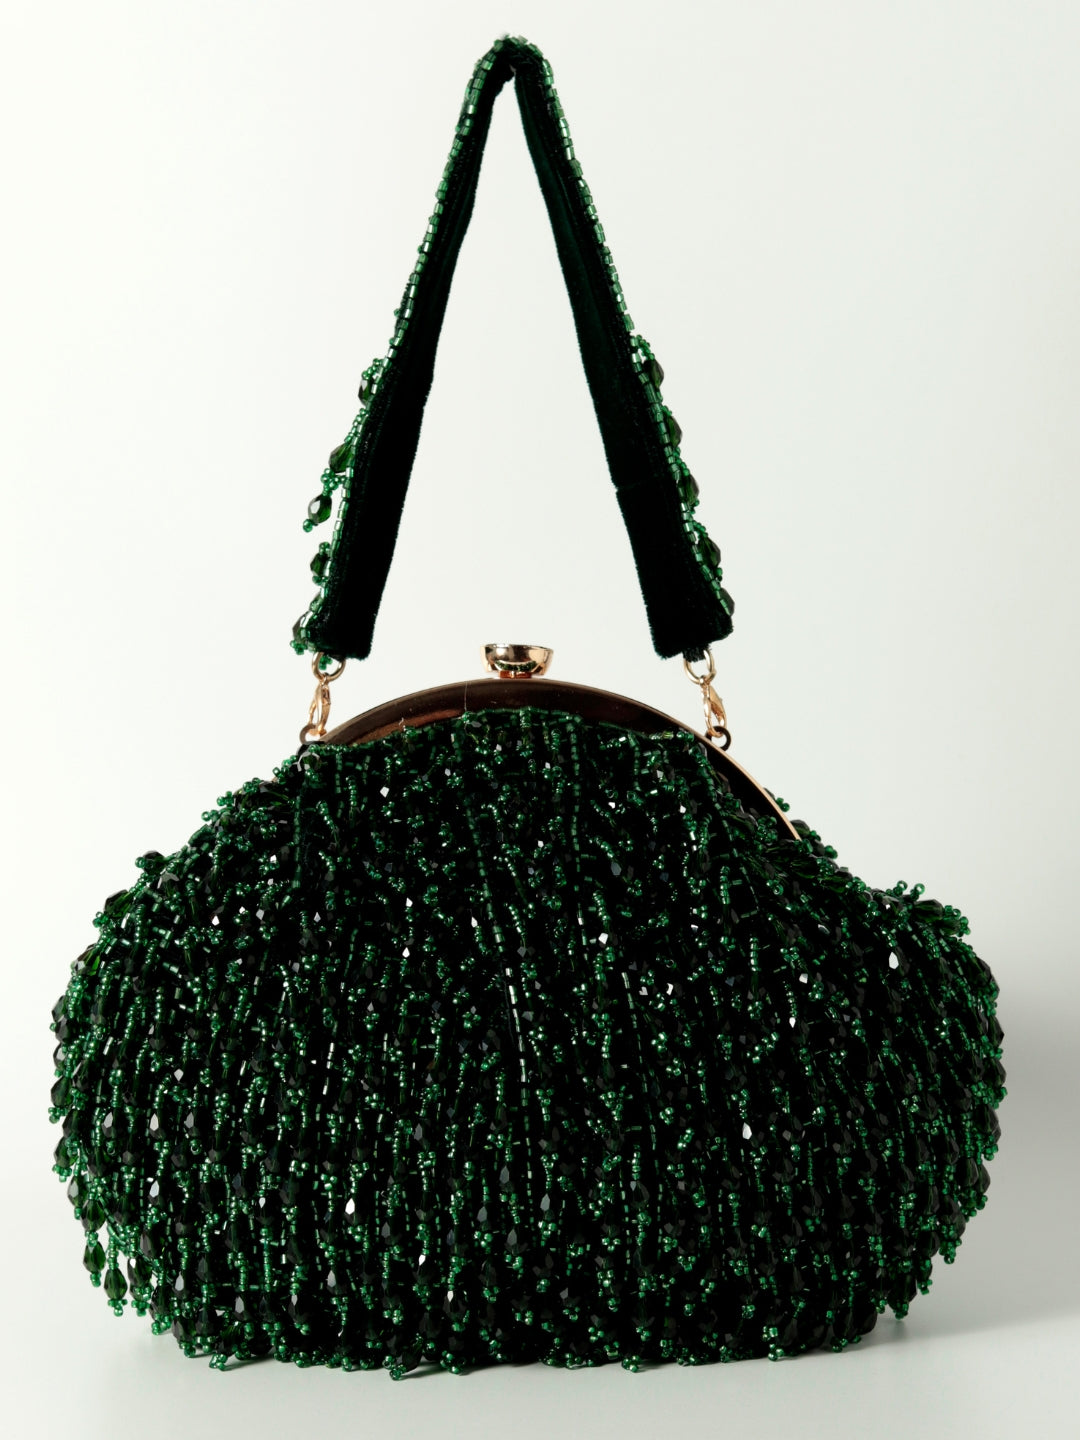 Rosa Batua Bag with Detachable Handle